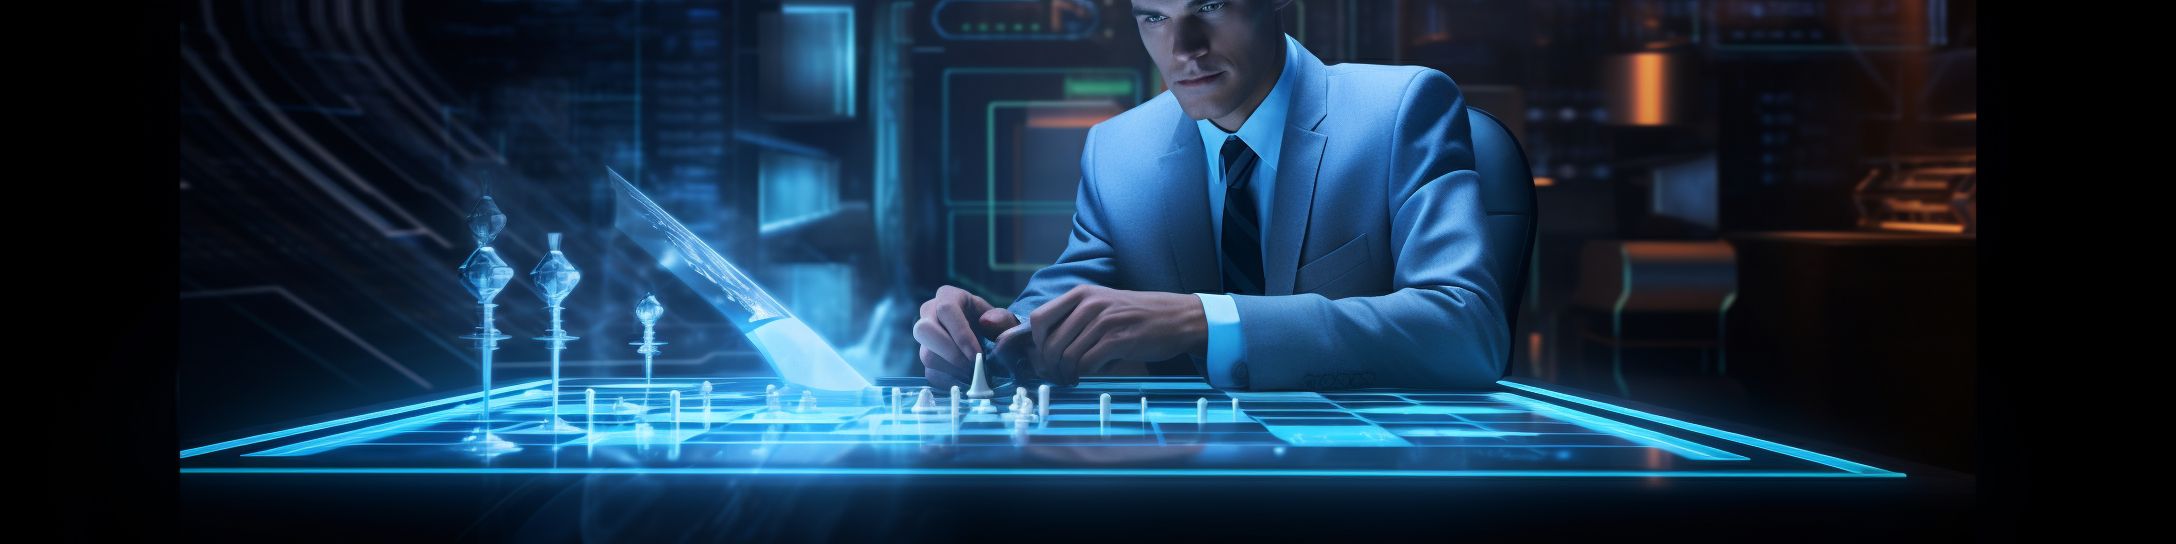 La liaison entre Magnus Carlsen et la technologie